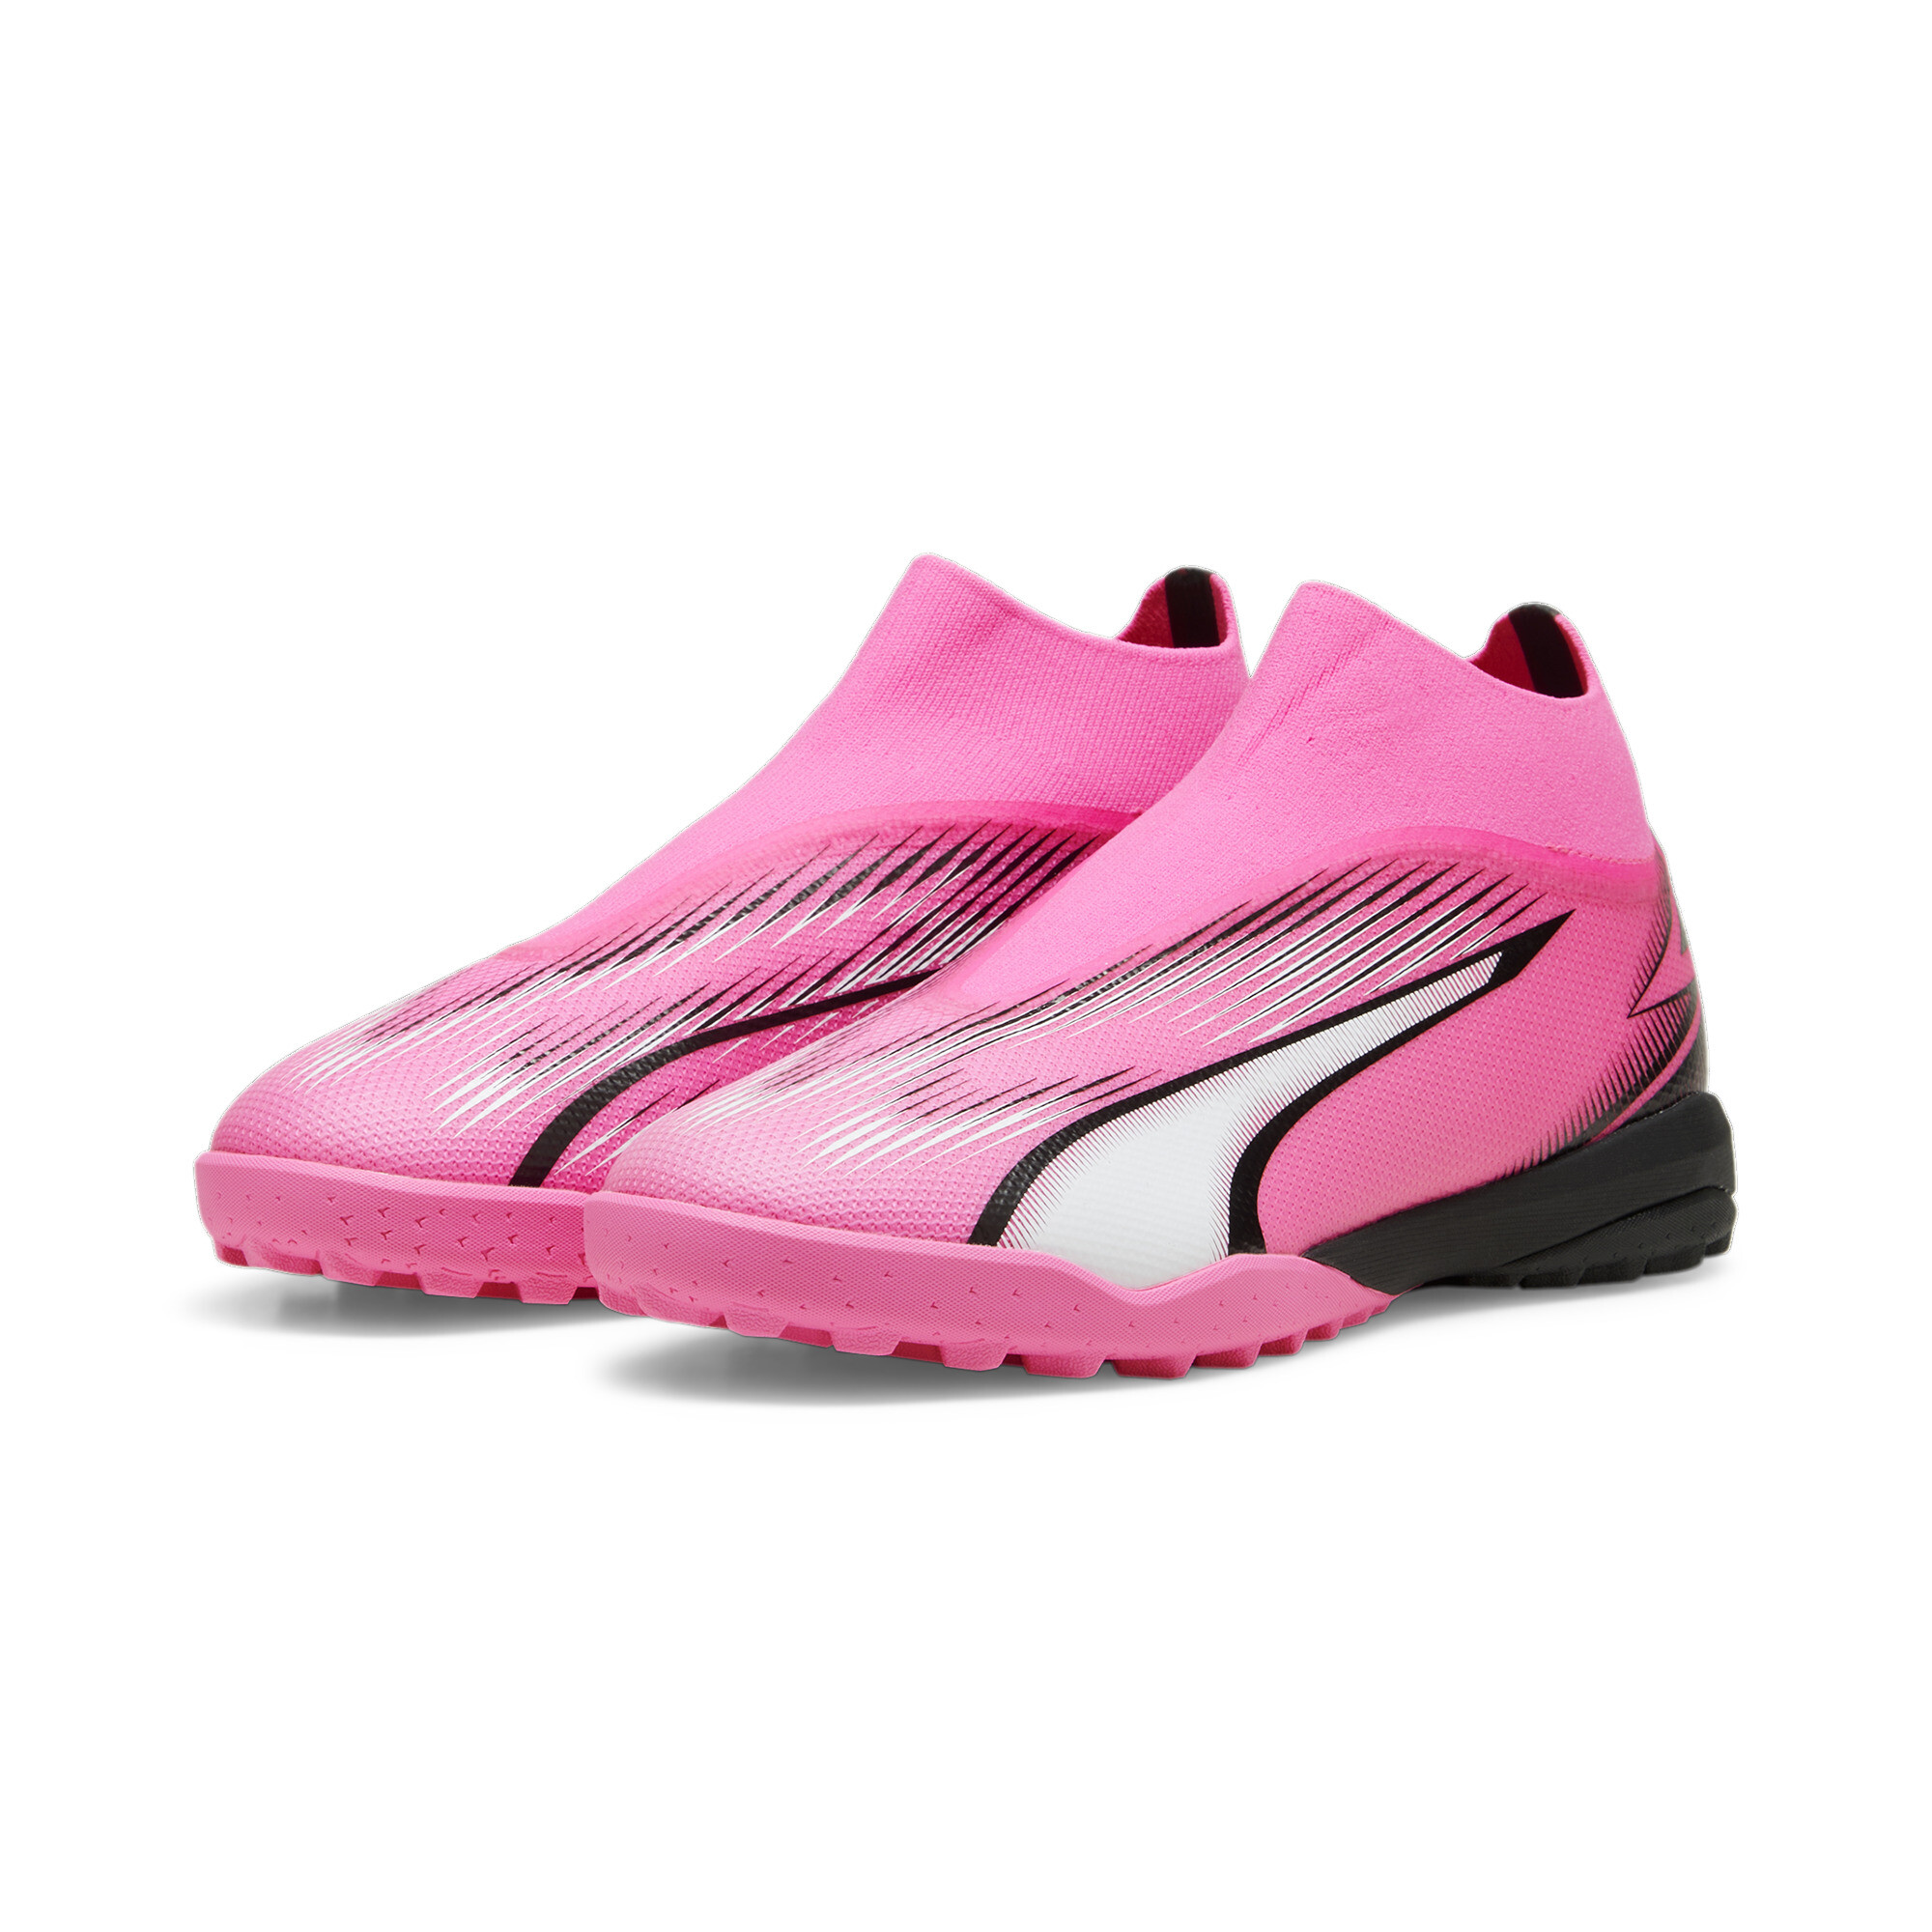 Men's PUMA ULTRA MATCH+ Laceless Football TT Boot In Pink, Size EU 47